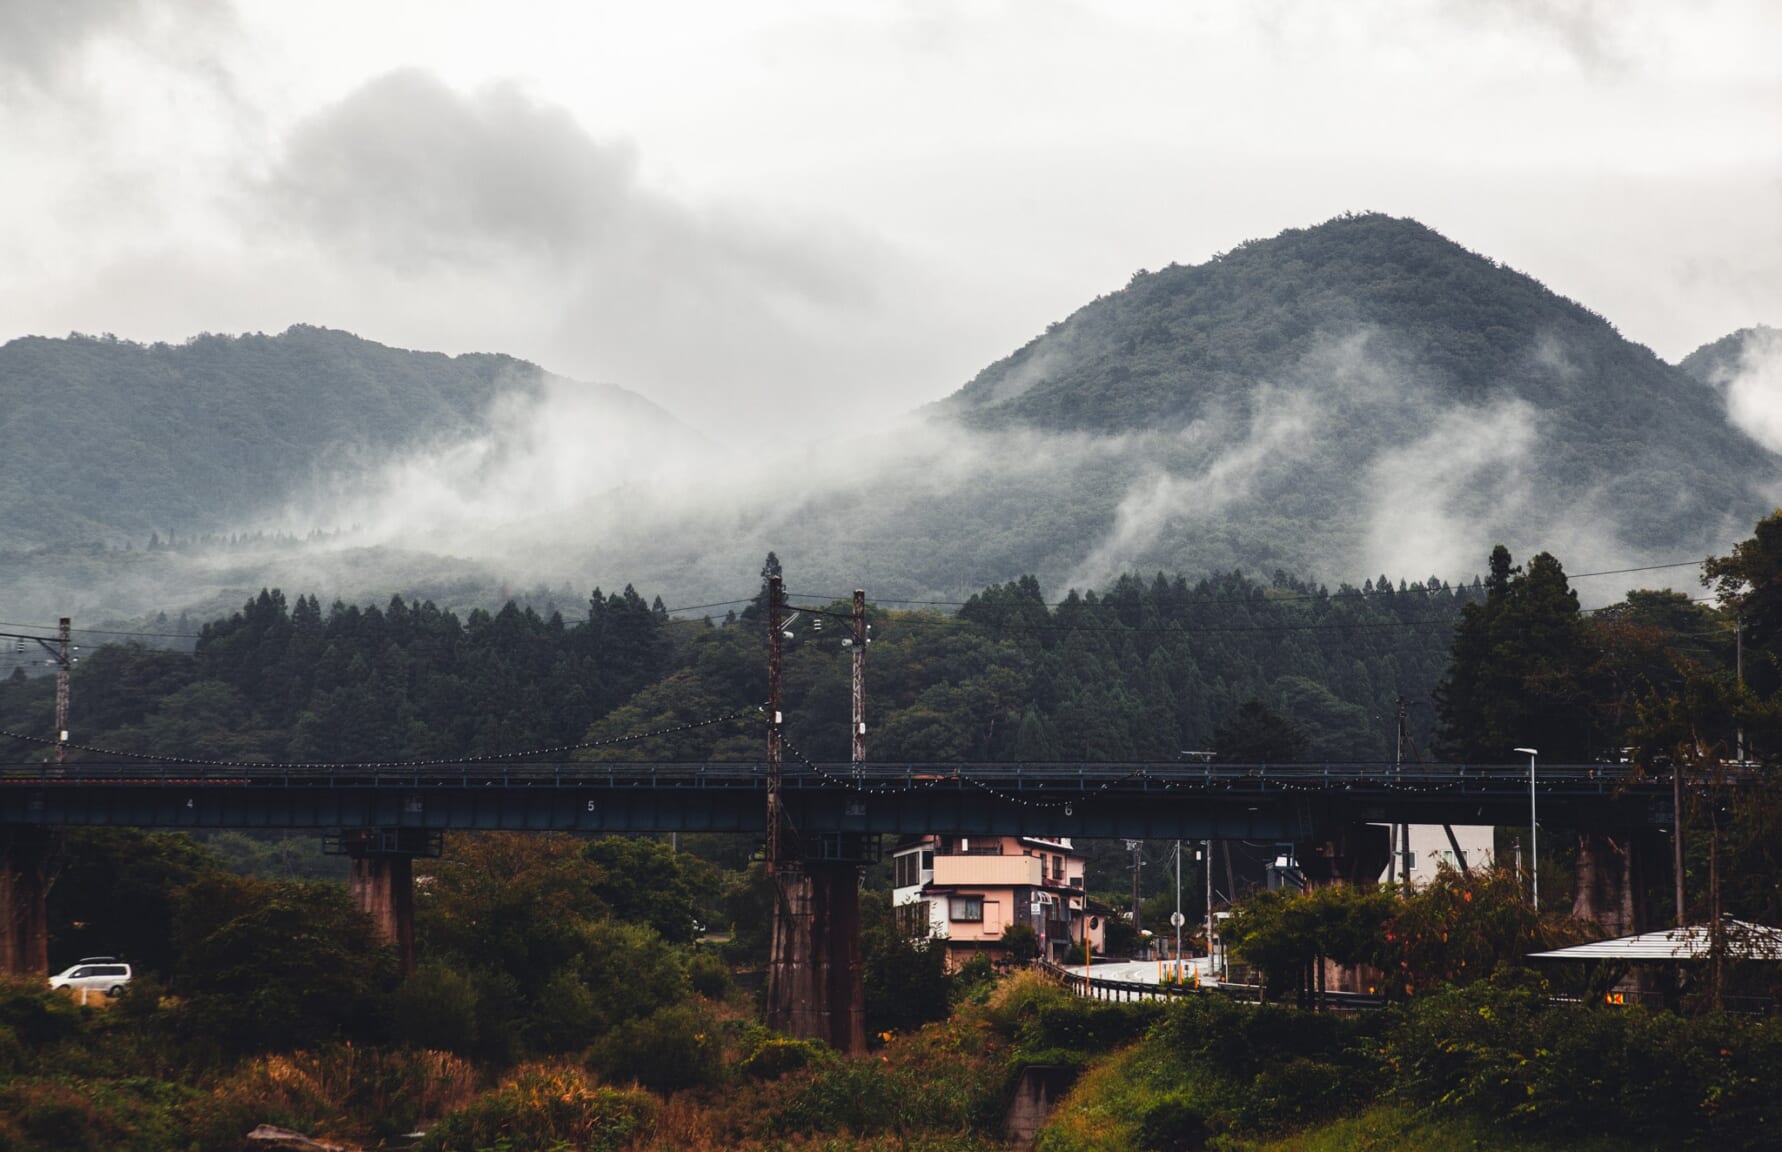 Foggy mountains around Yamadera